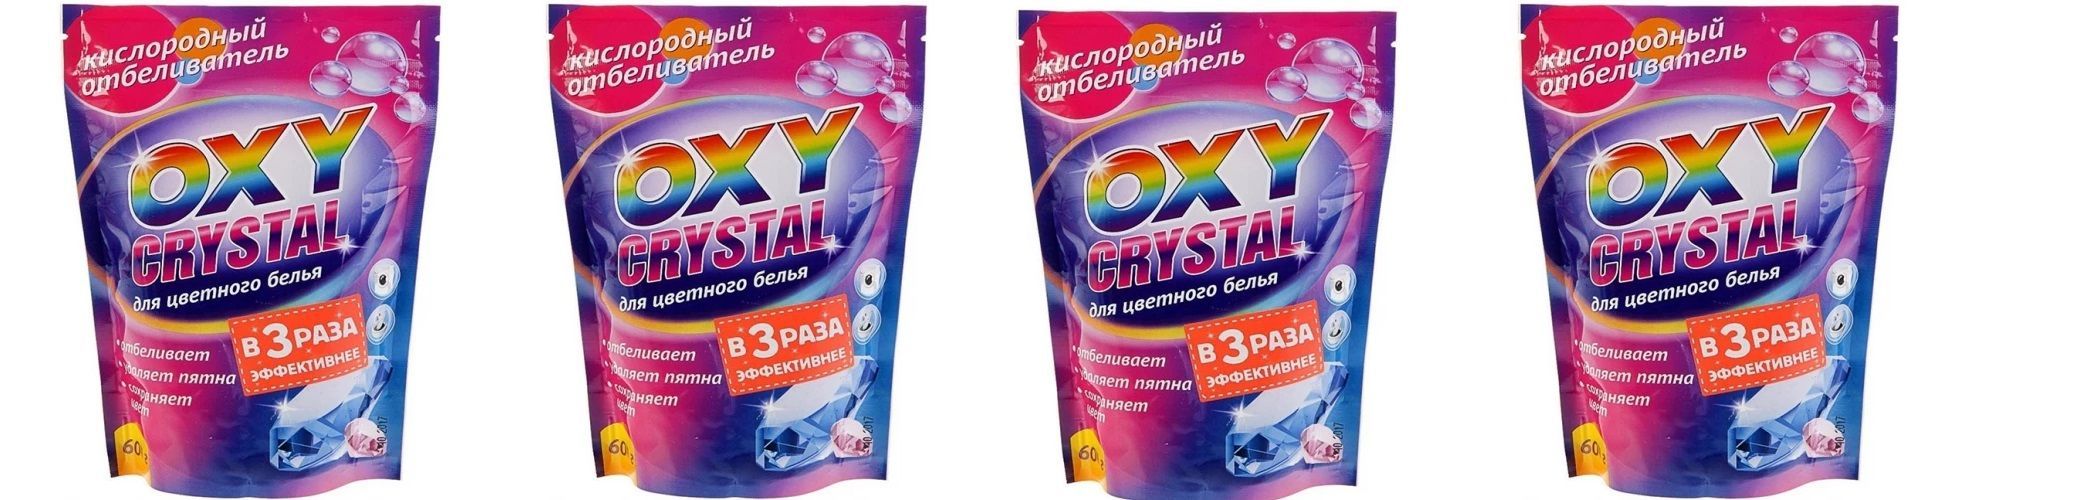 Oxy crystal. Кислородный отбеливатель Окси Кристалл. Отбеливатель для цветного белья. Цветное белье. Кислородный отбеливатель для белья.